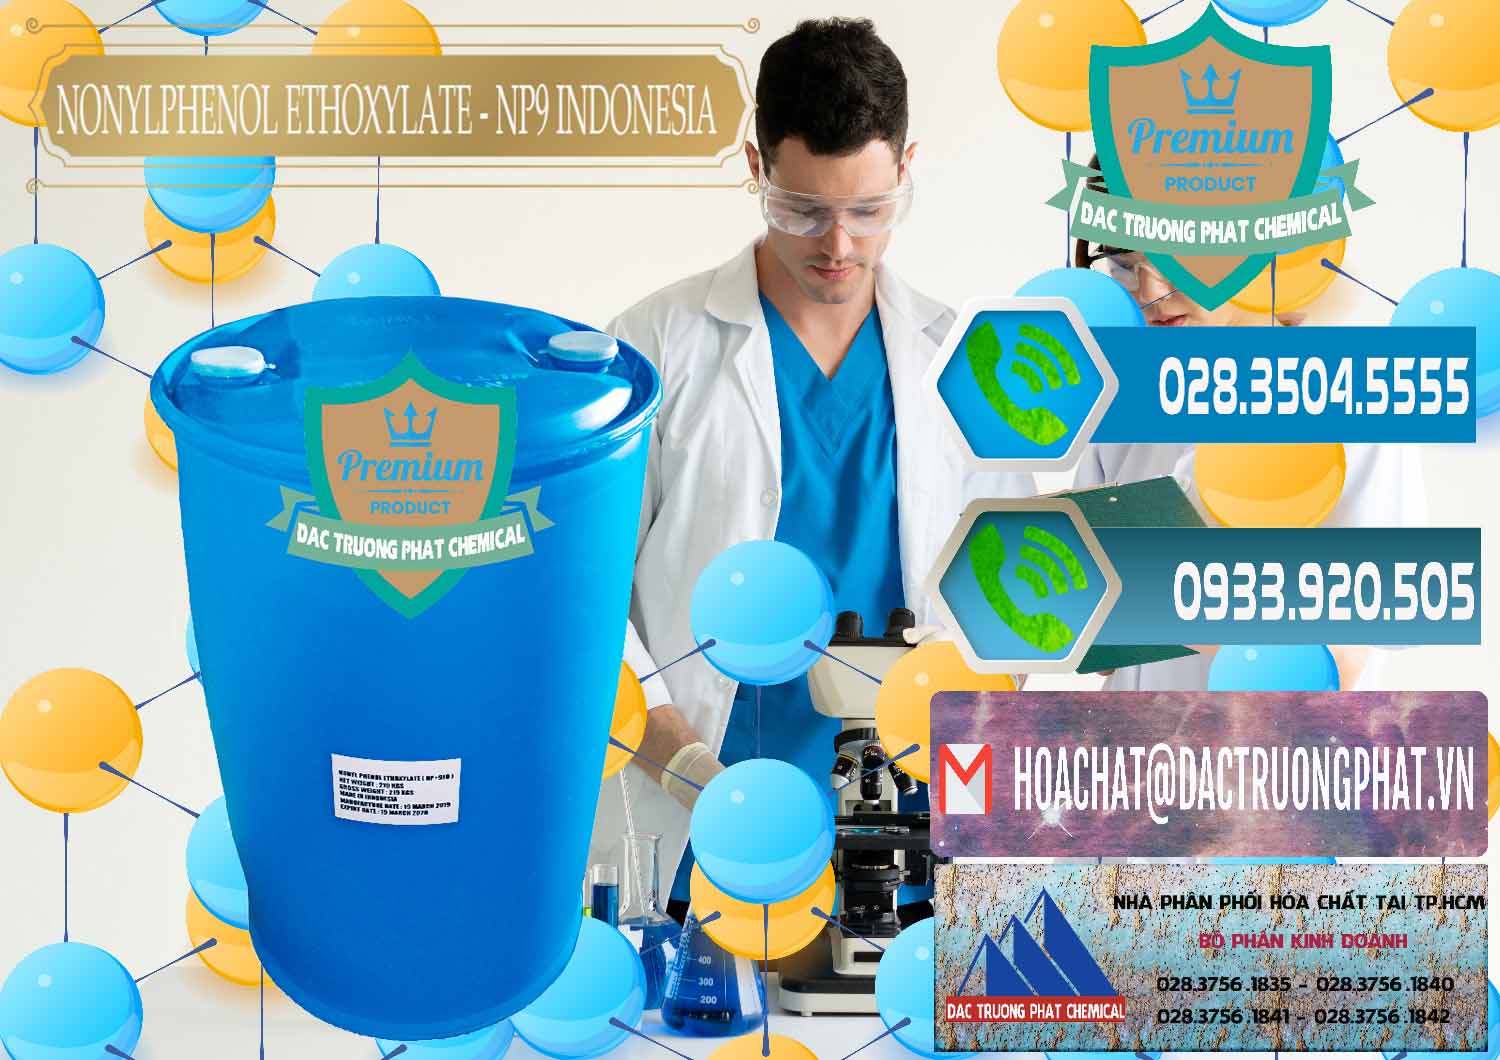 Cty phân phối và bán NP9 - Nonyl Phenol Ethoxylate Indonesia - 0317 - Công ty bán _ phân phối hóa chất tại TP.HCM - congtyhoachat.net